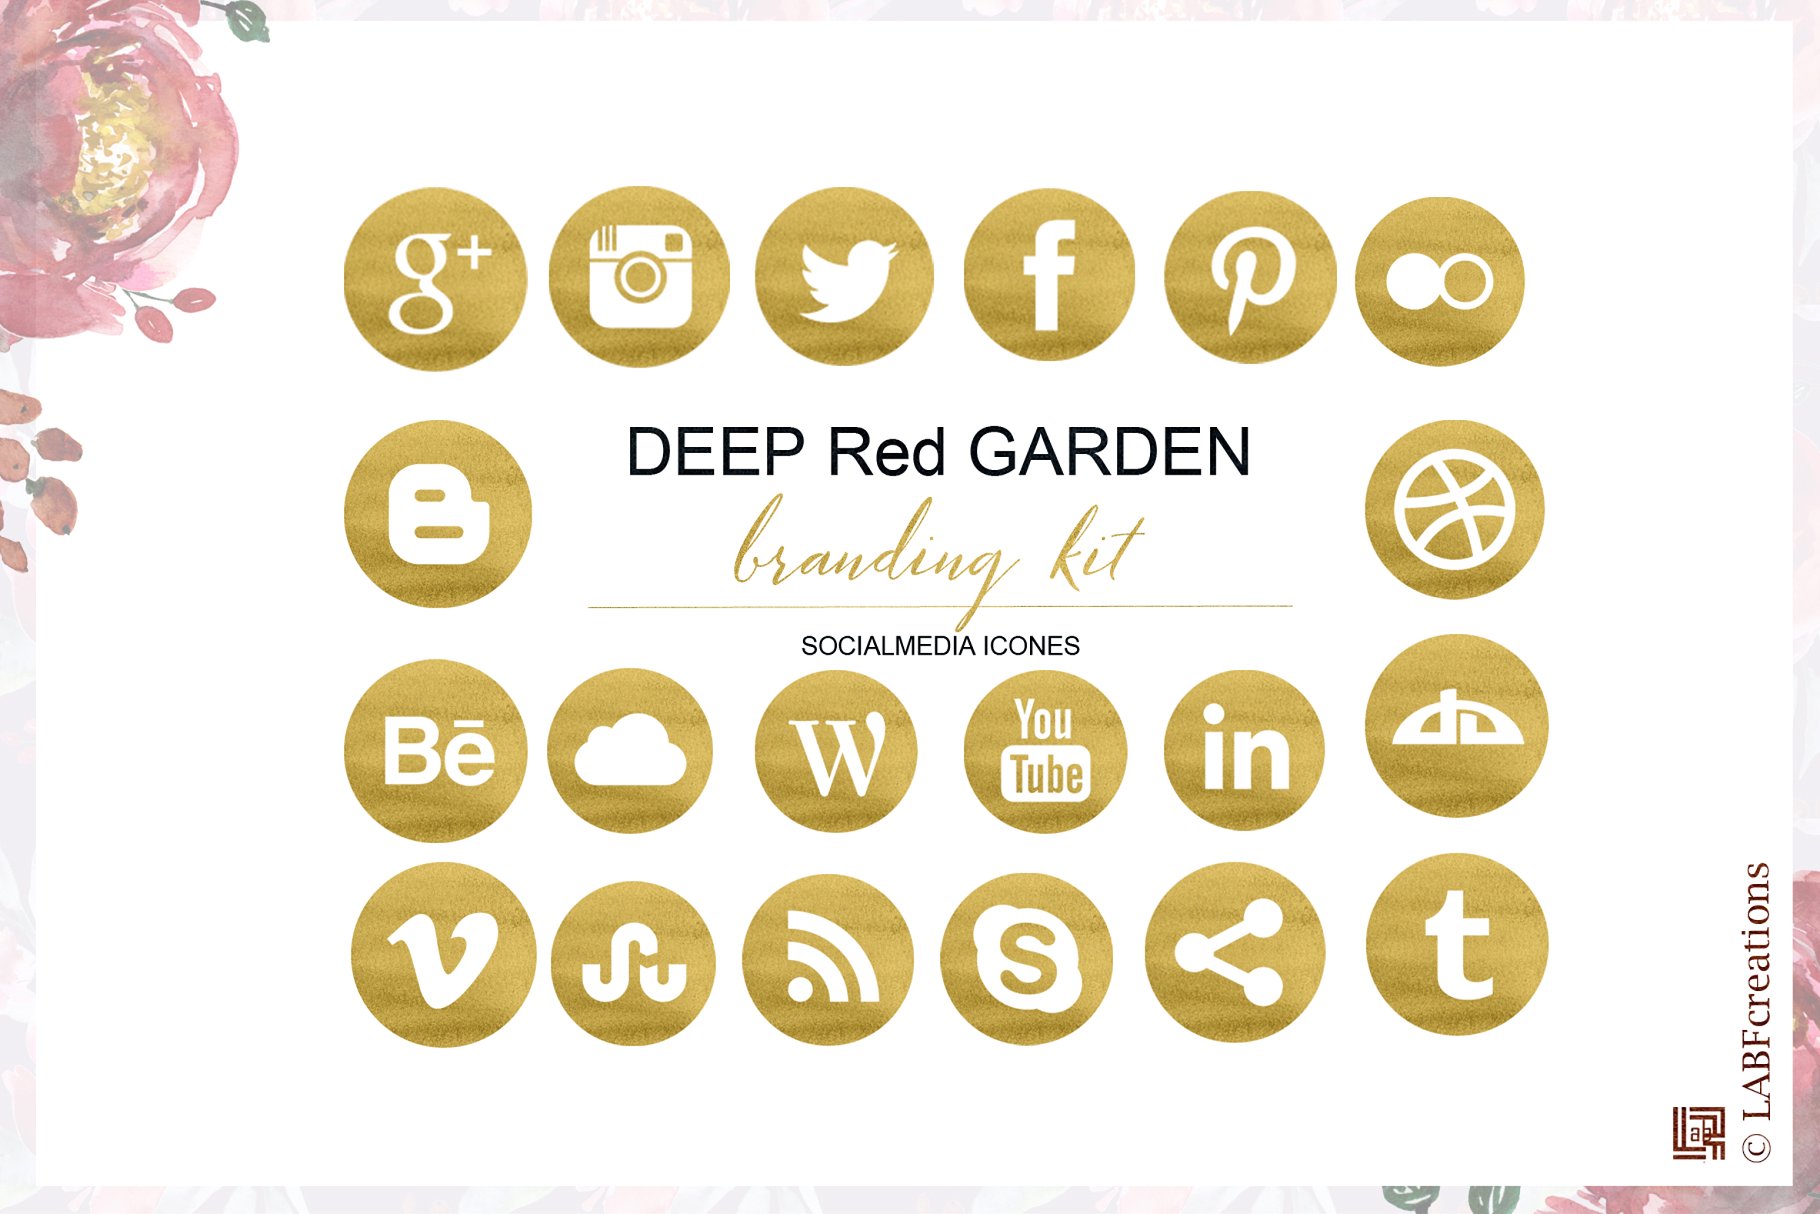 深红色水彩花卉元素 Deep red garden. Branding kit.插图(2)